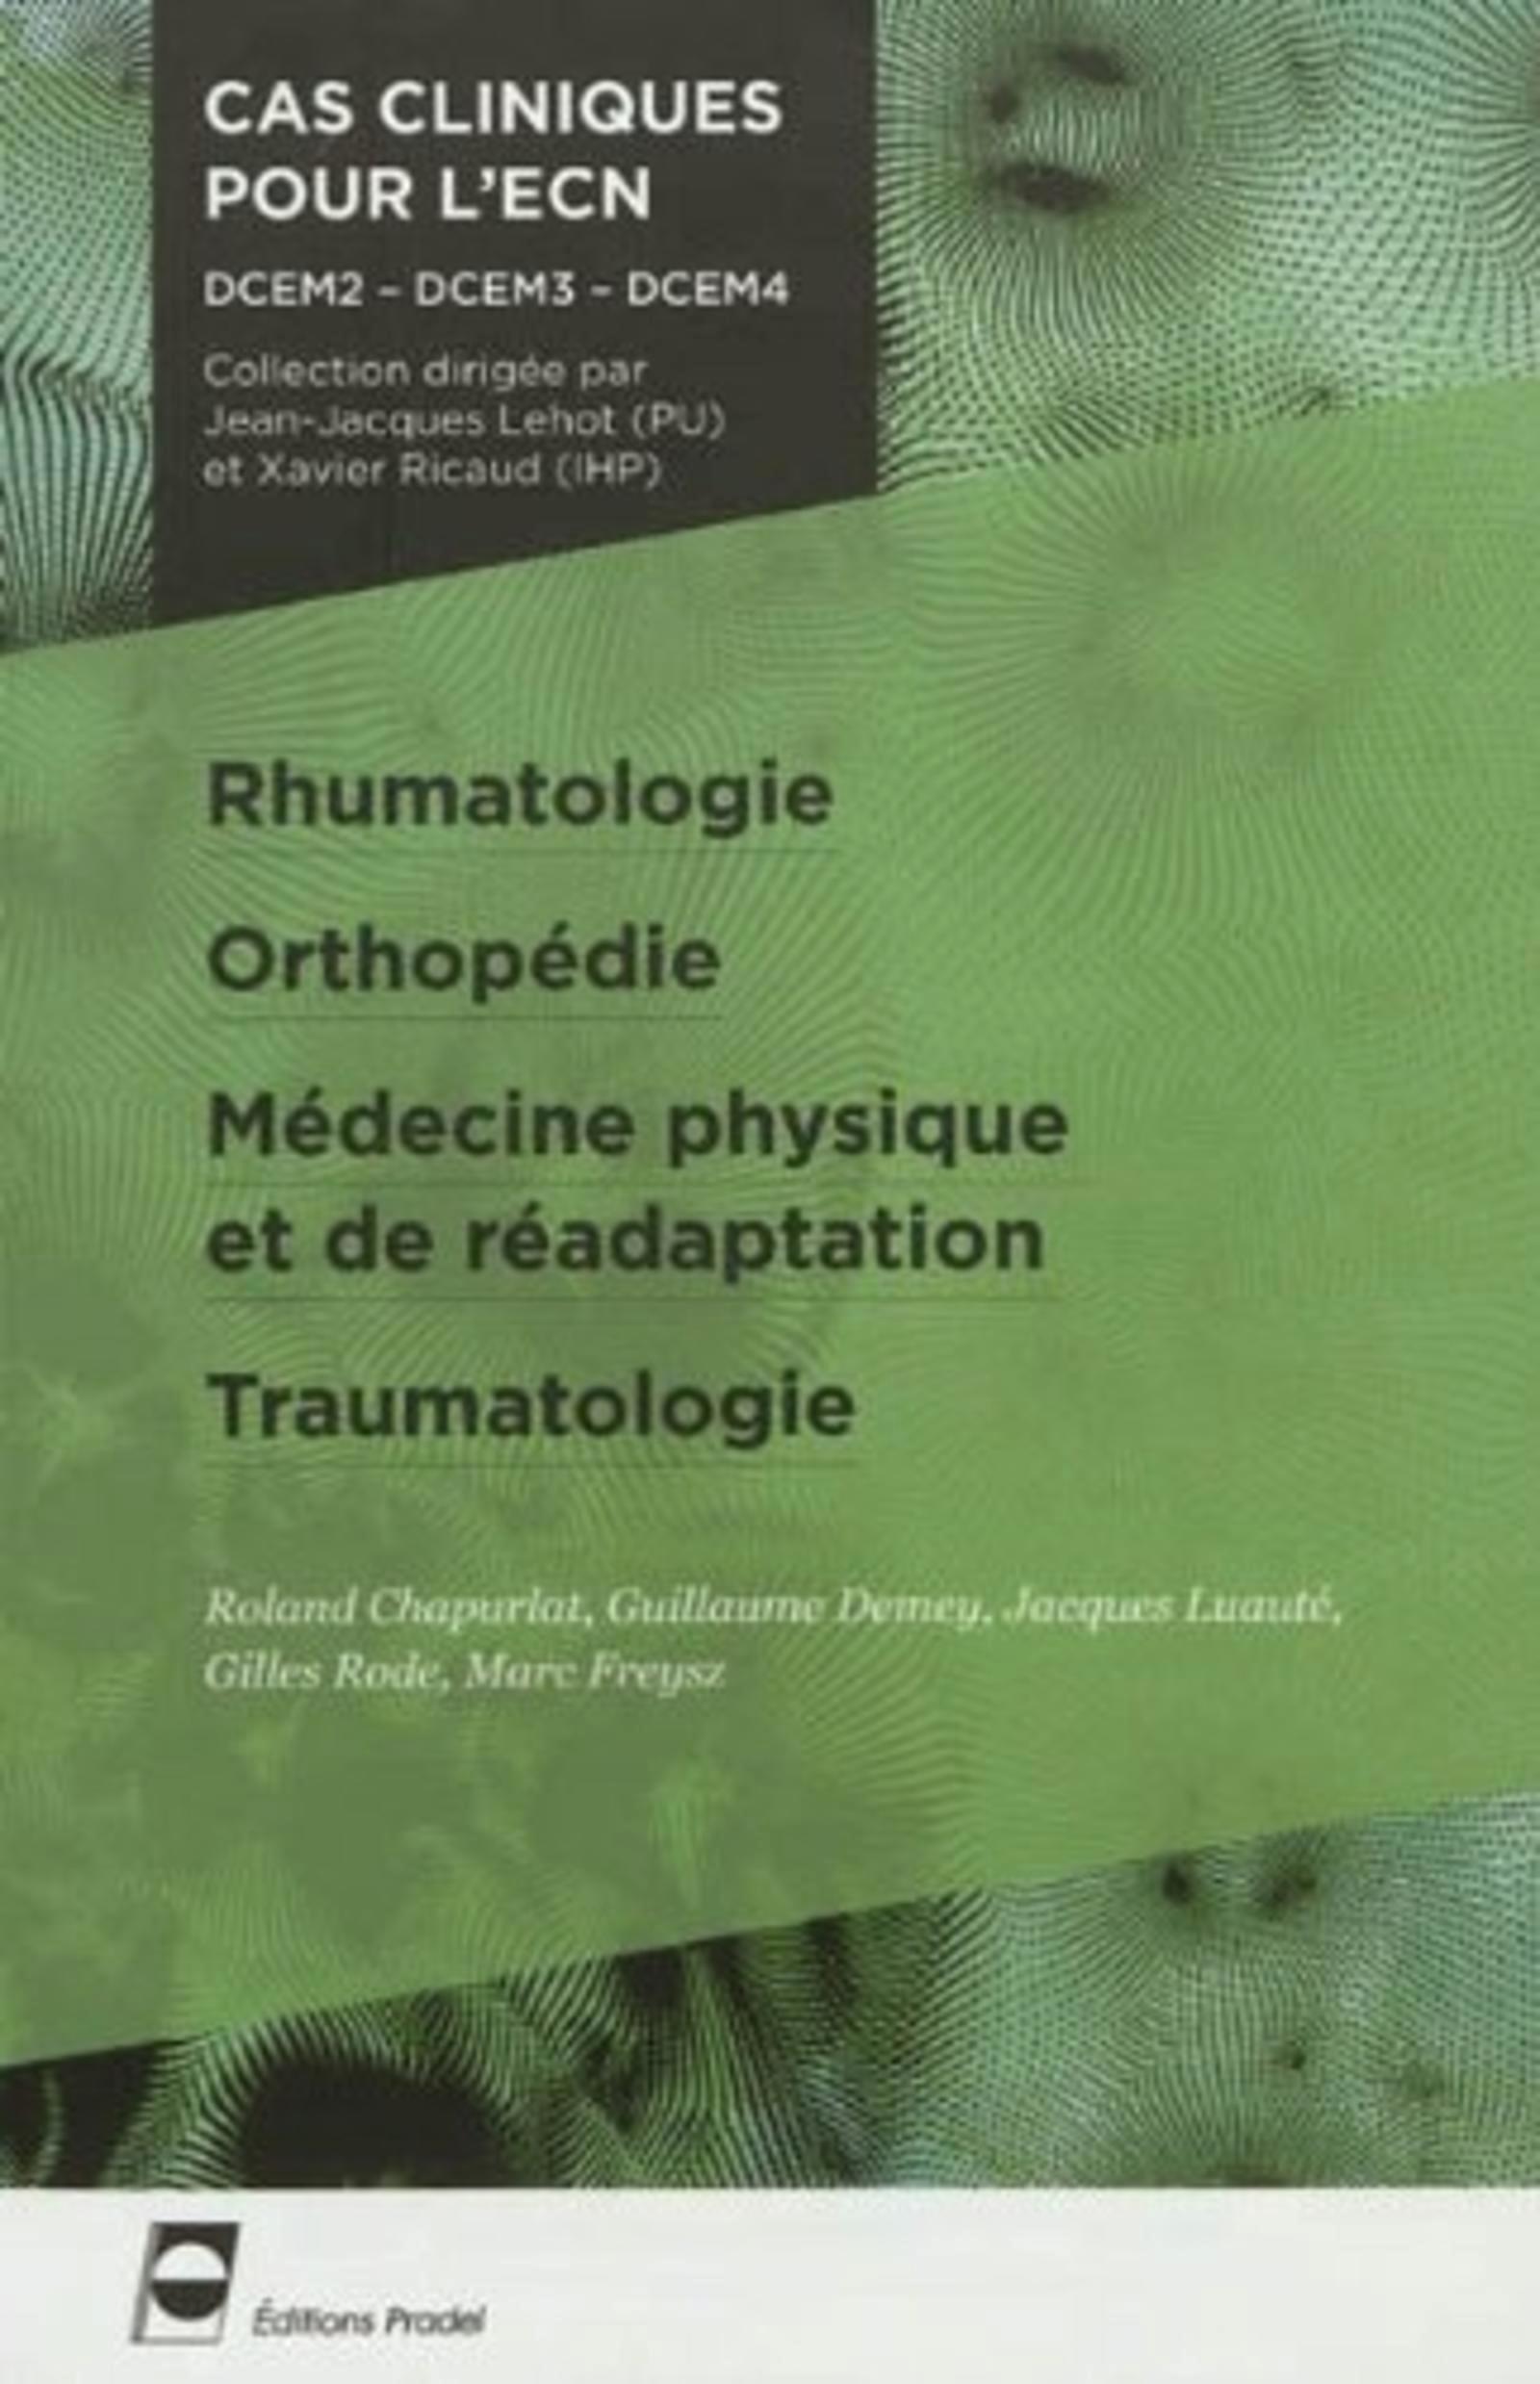 Rhumatologie - Orthopédie - Médecine physique et de réadaptation - Traumatologie, DCEM2 - DCEM3 - DCEM4. (9782361100162-front-cover)